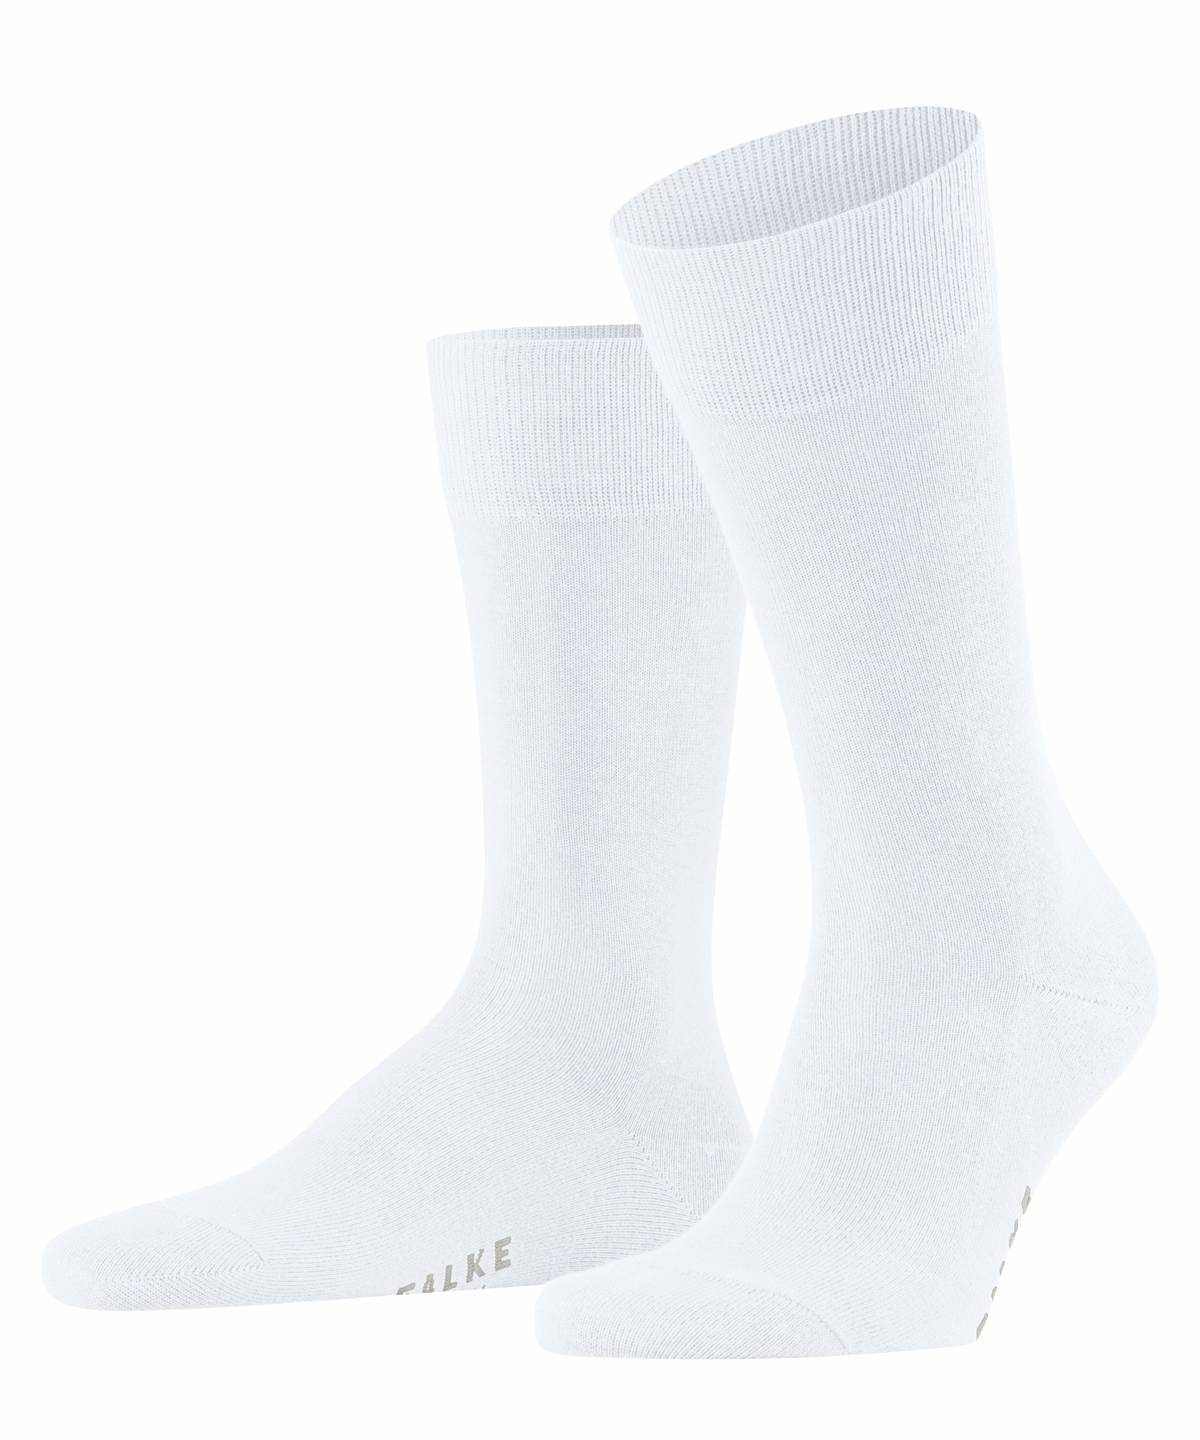 Falke Herren Socken Hersteller: Falke Bestellnummer:4031309170169